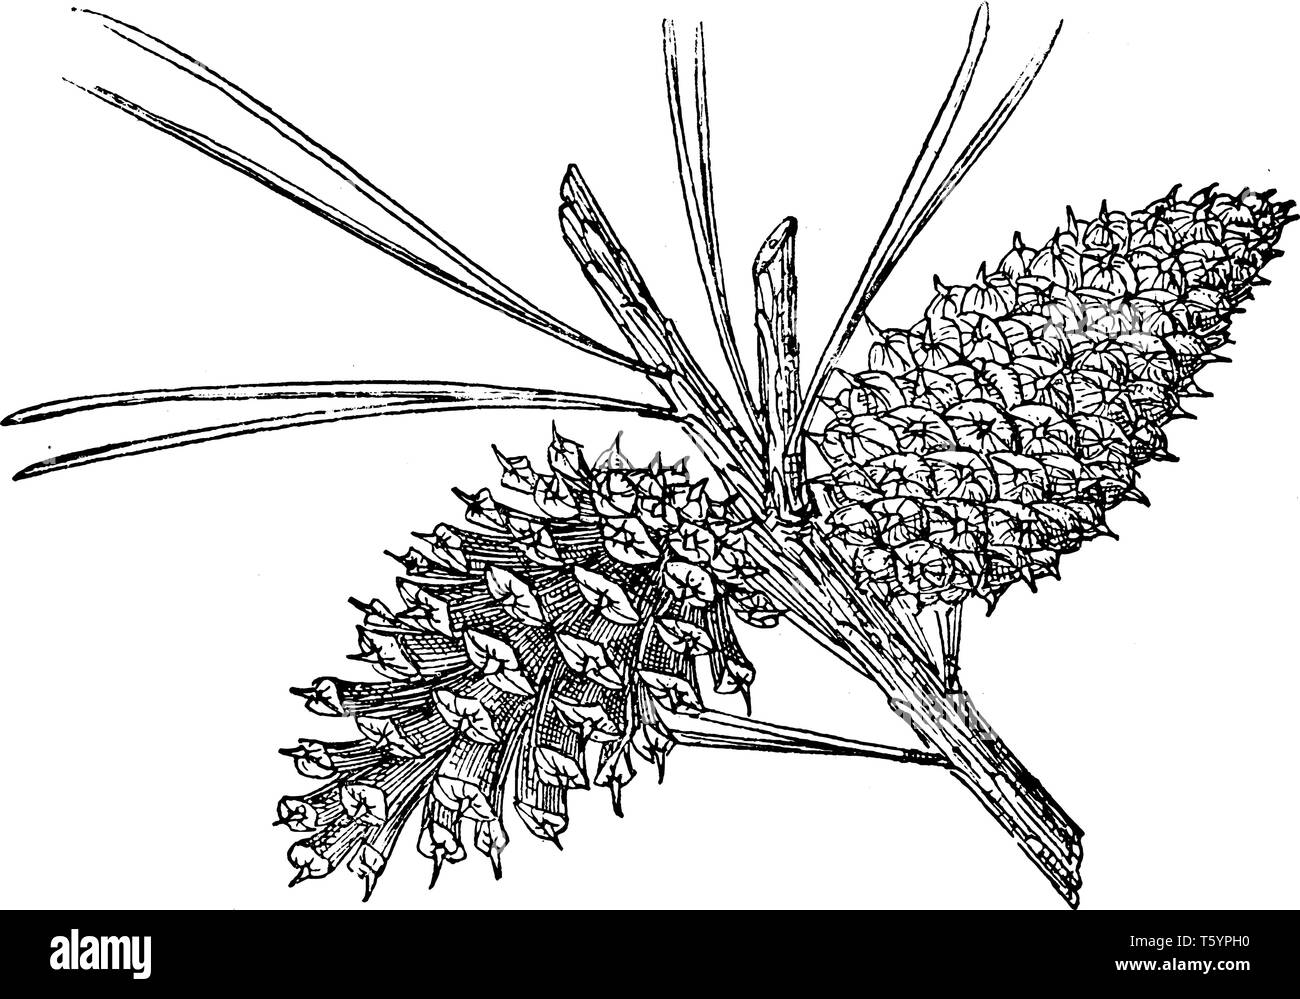 Il cono di pino di Tamarack Pino, nativa per la gamma a cascata, Sierra Nevada, e circondante le gamme della montagna, vintage disegno della linea o incisione Illustrazione Vettoriale